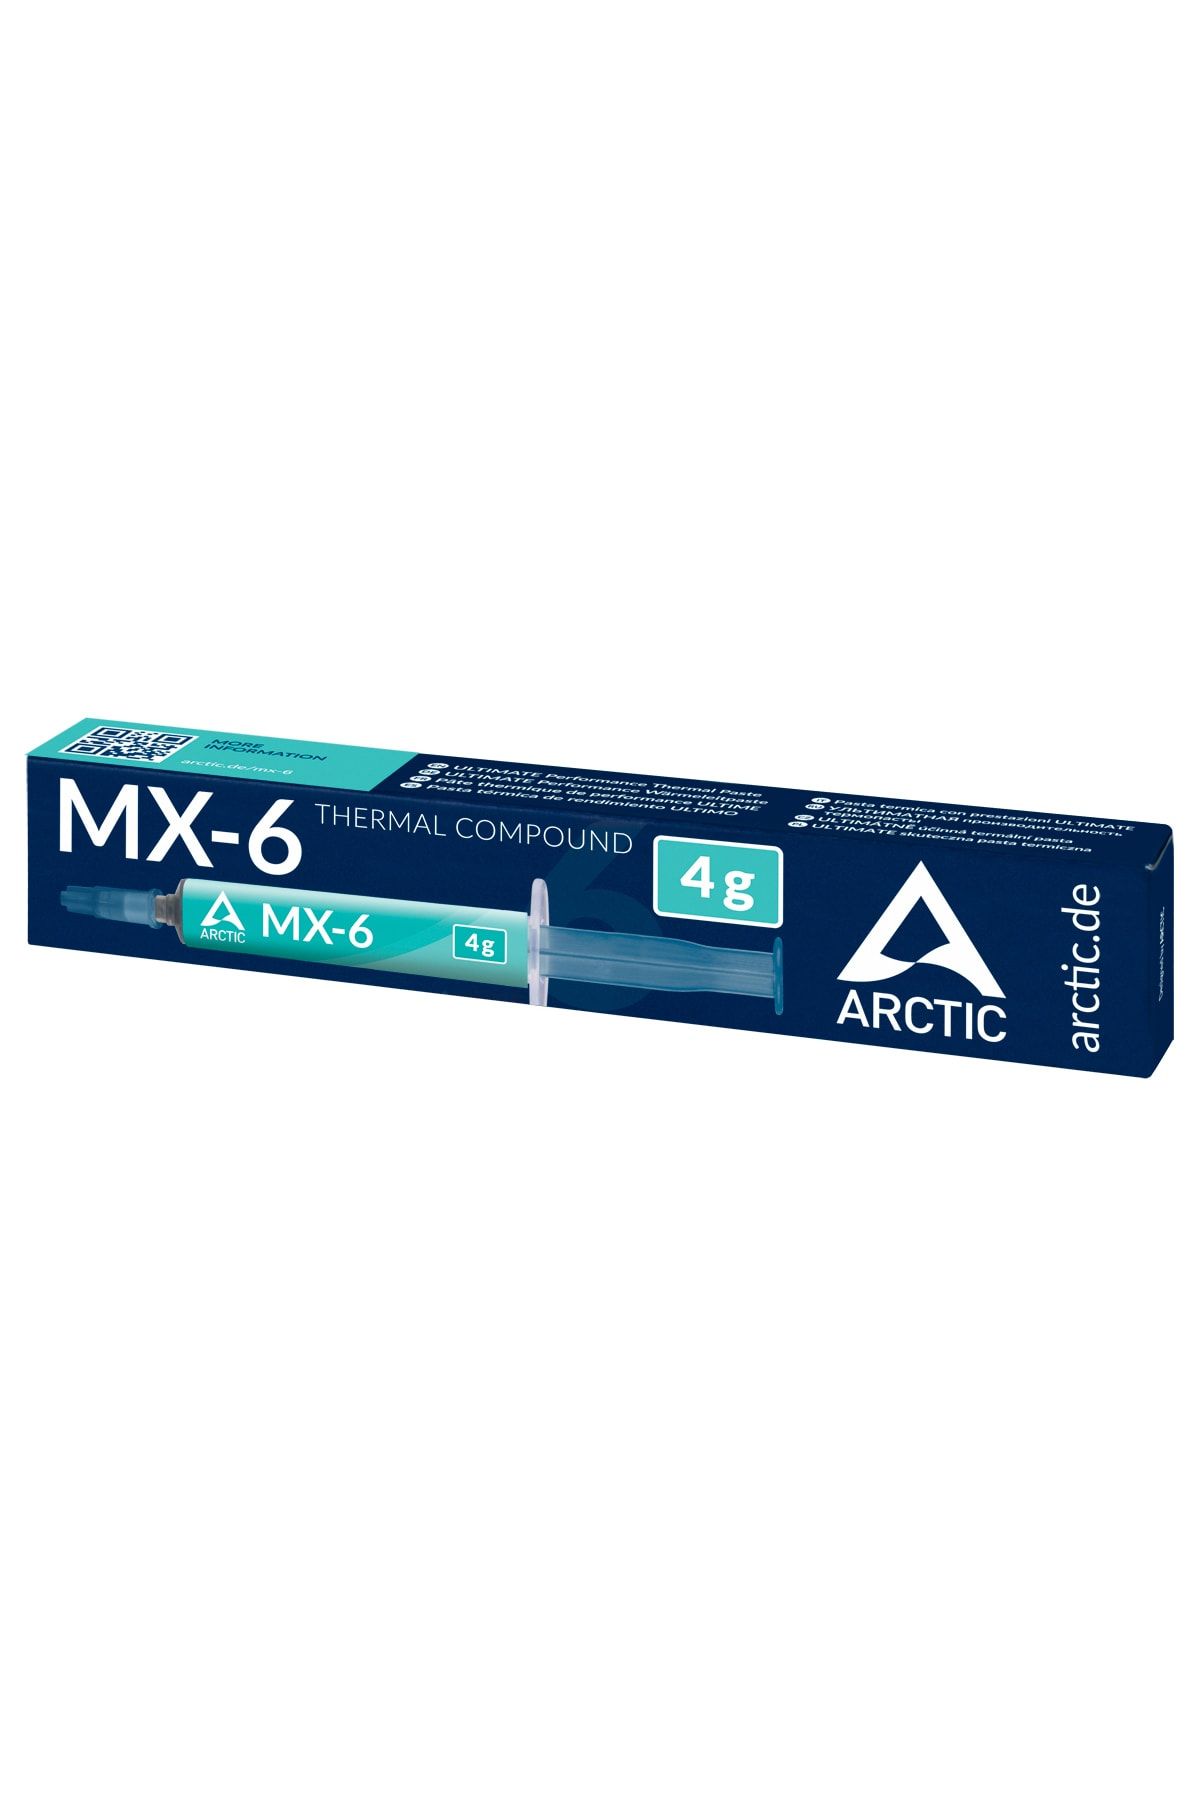 Arctic MX-6 tanıtıldı: İşte fiyatı